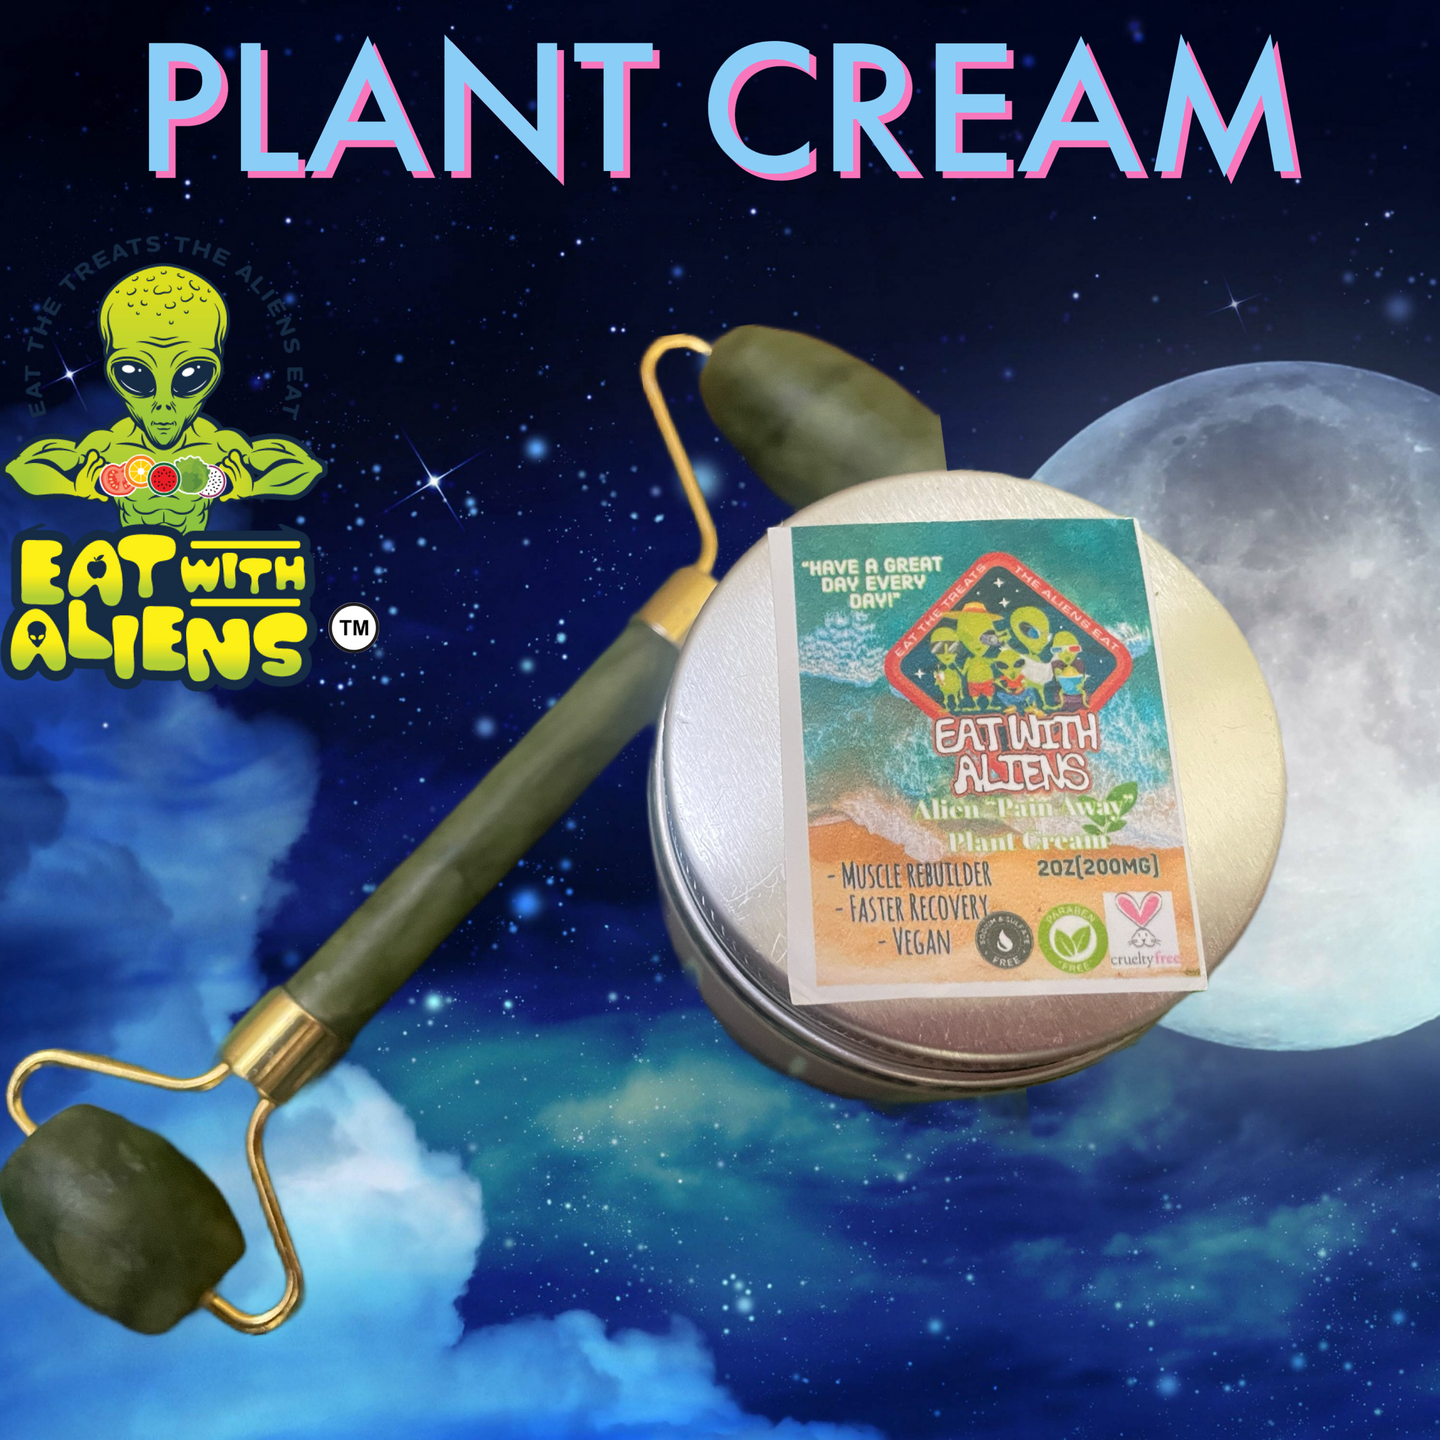 Eat With Aliens “Plant Cream”